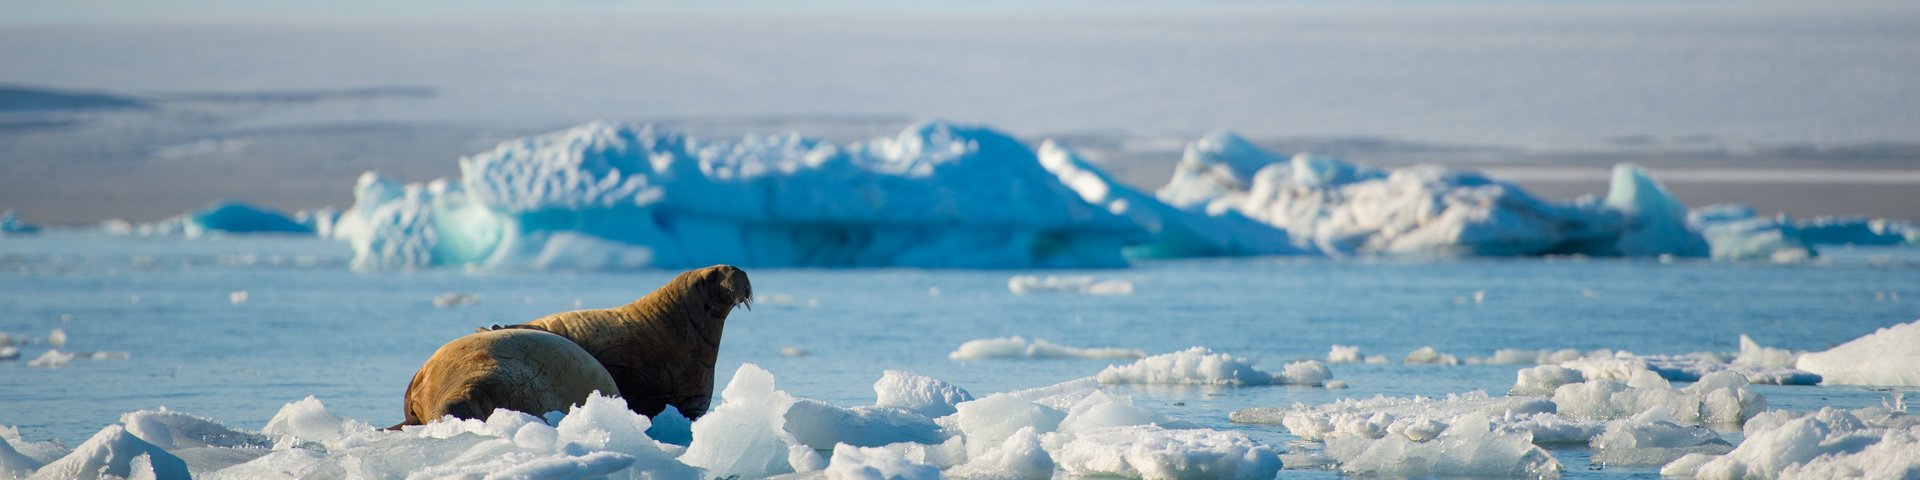 Walross auf Eisscholle in Spitzbergen